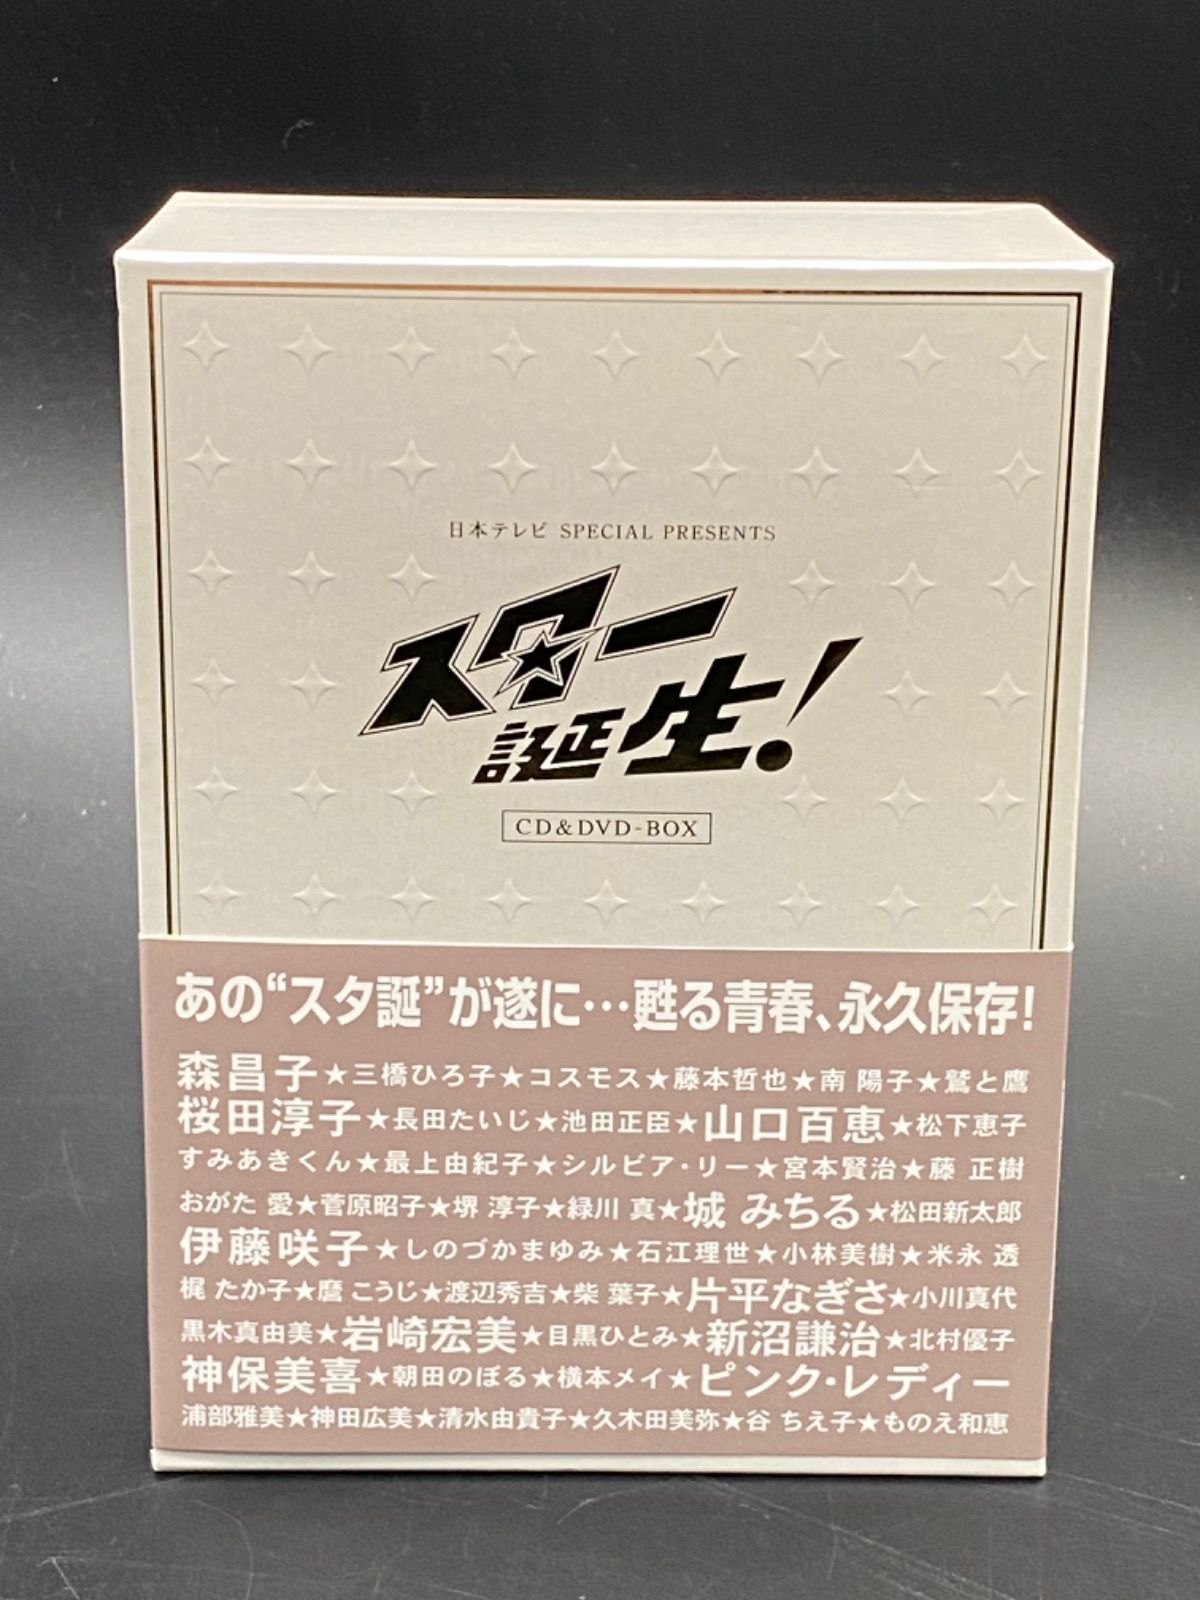 魅力的な価格 日本テレビ SPECIAL PRESENTS「スター誕生!」CD&DVD-BOX 